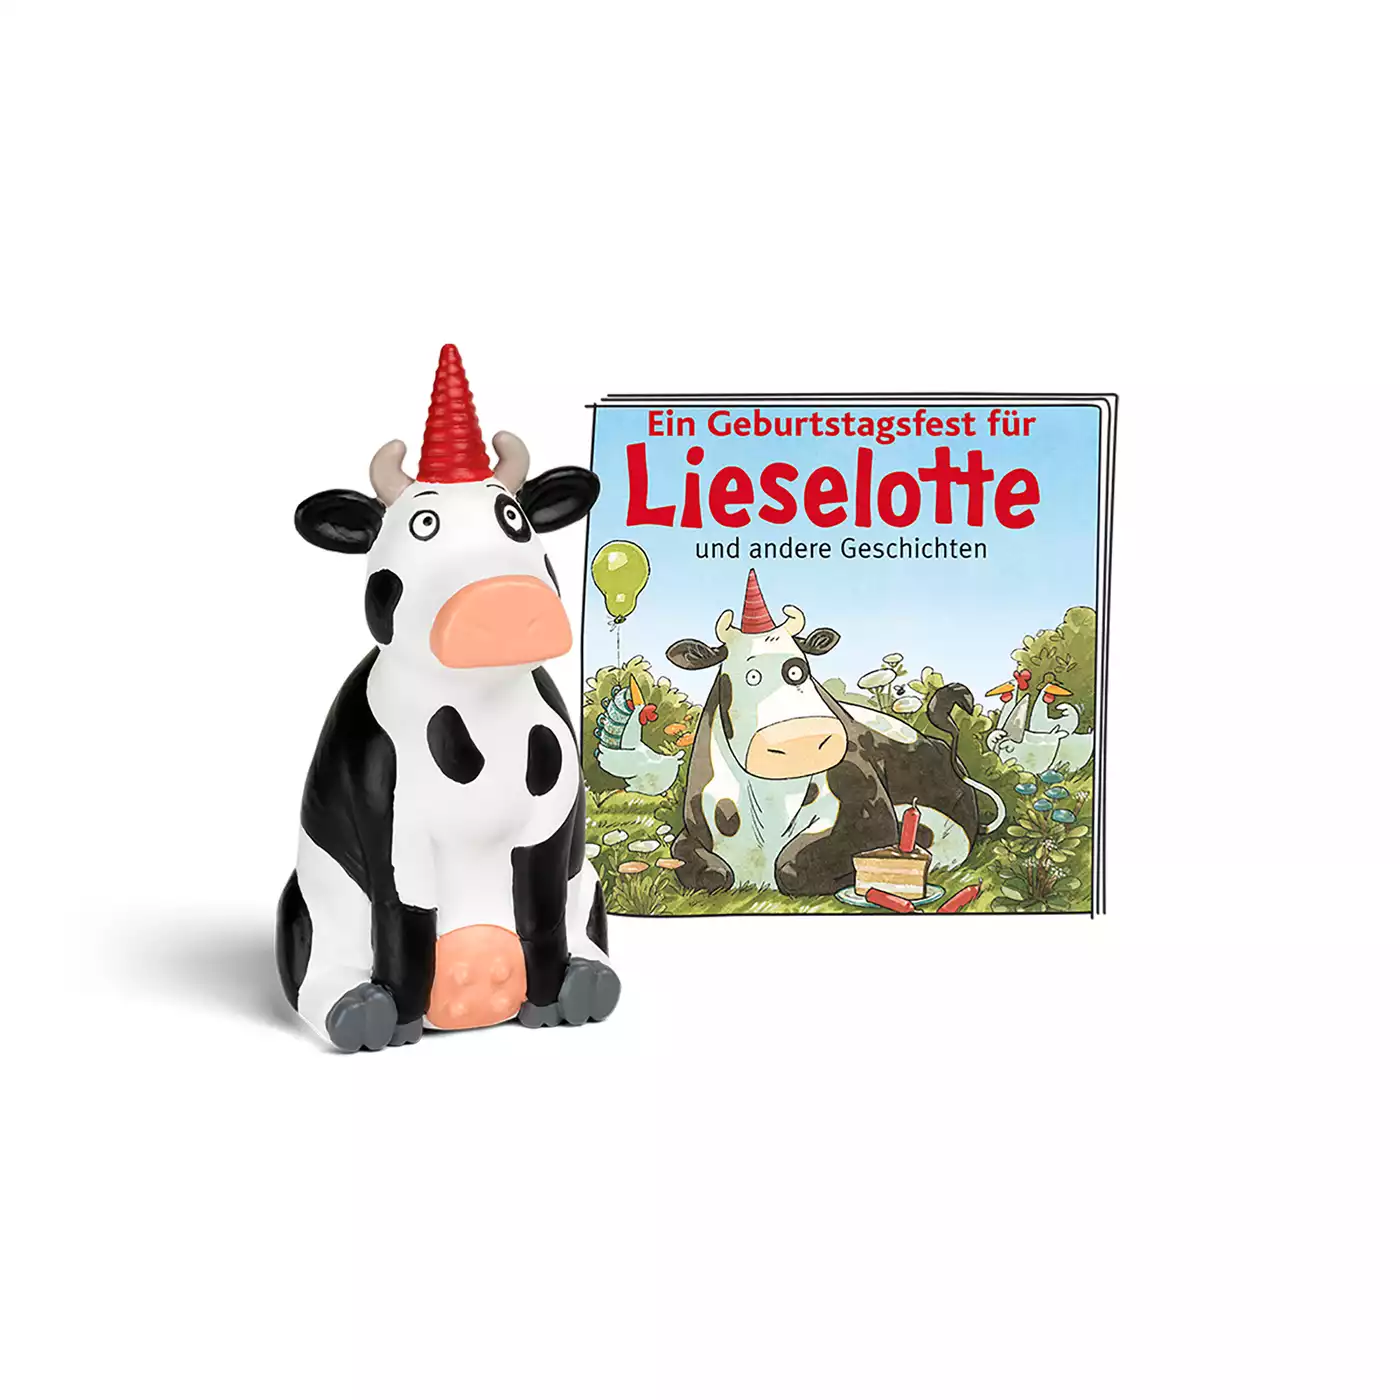 Ein Geburtstagsfest für Lieselotte und andere Geschichten tonies 2000575333204 1